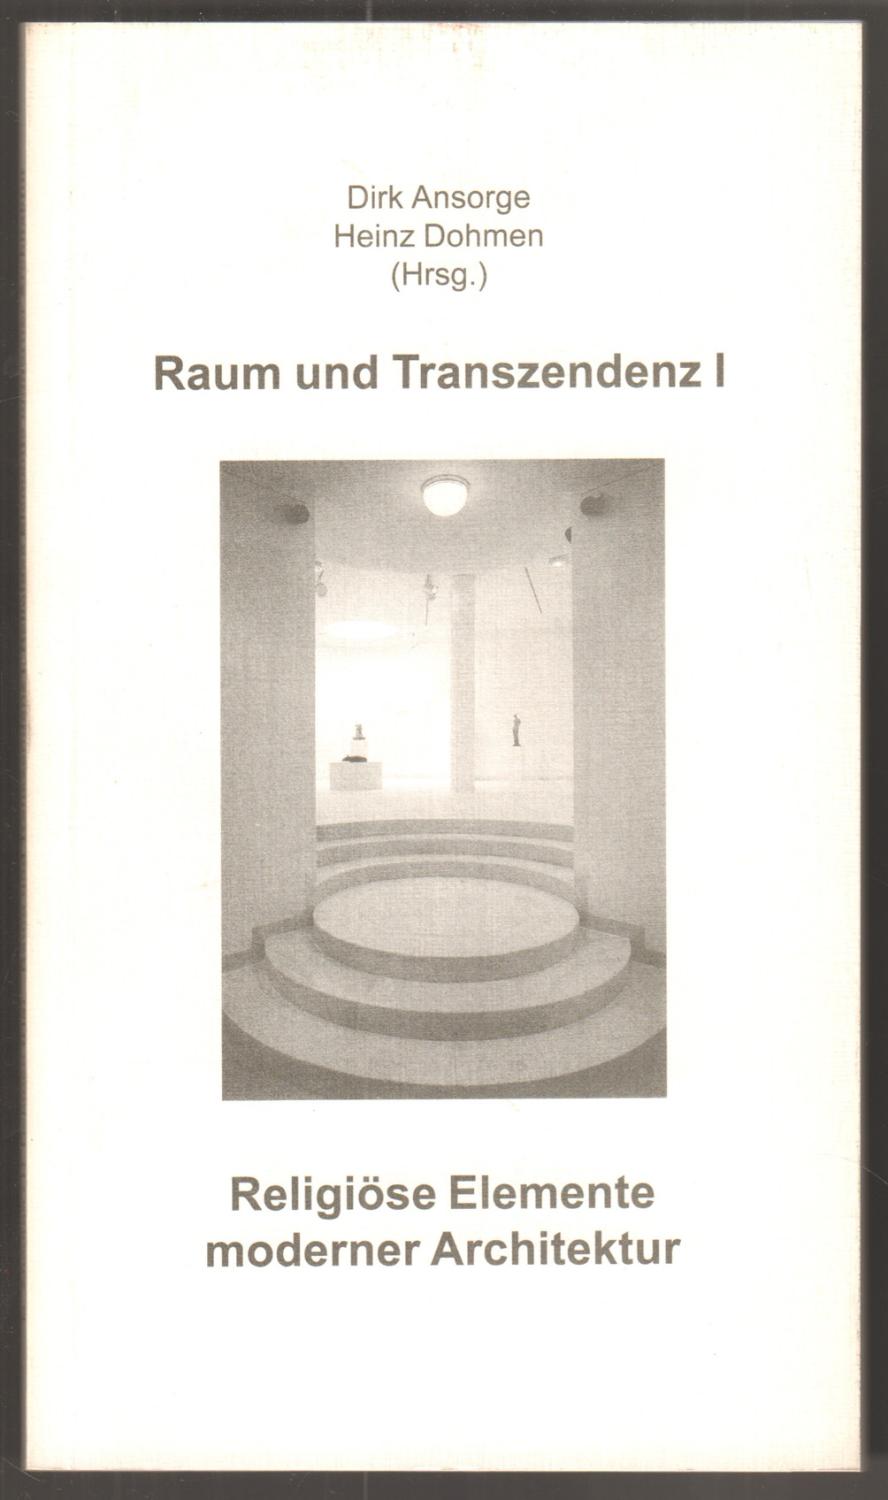 Raum und Transzendenz I. Religiöse Elemente moderner Architektur. - Ansorge, Dirk und Heinz Dohmen (Hrsg.)